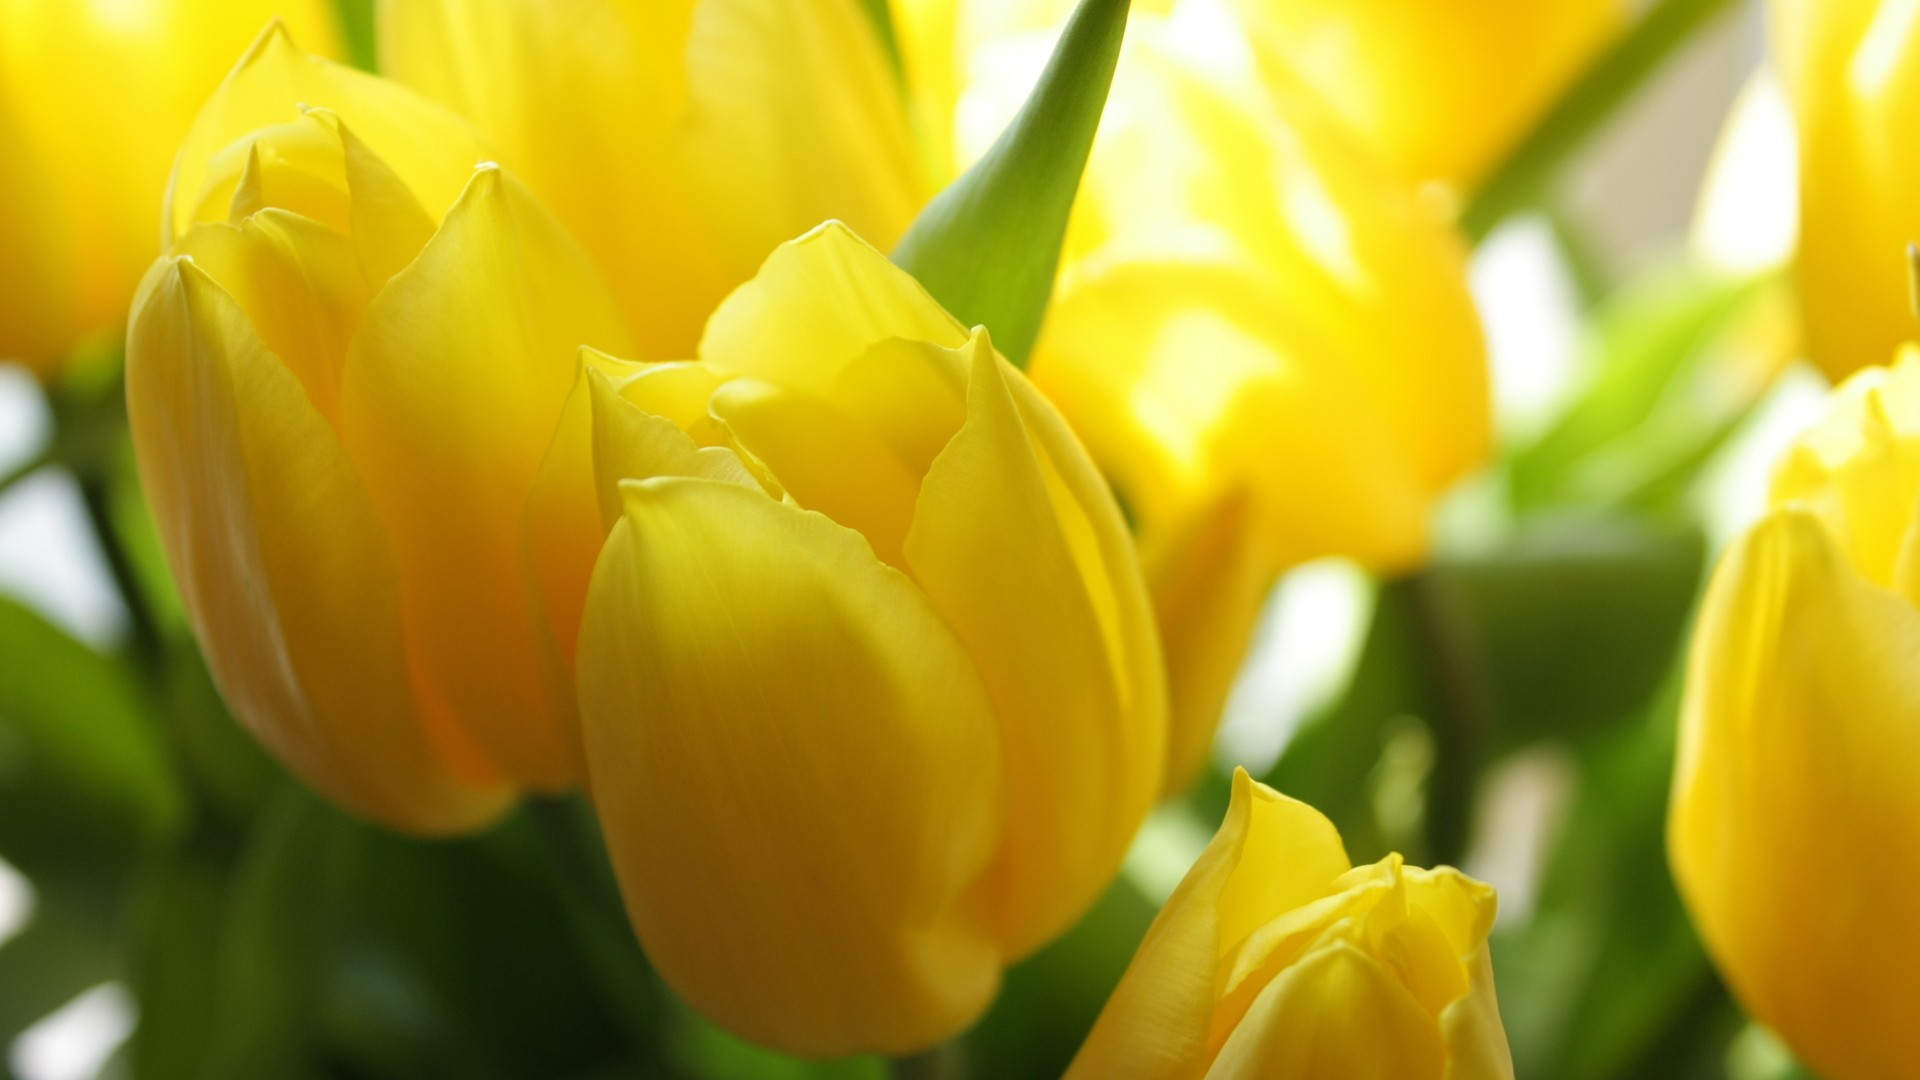 papel tapiz de tulipanes amarillos,flor,planta floreciendo,amarillo,pétalo,tulipán